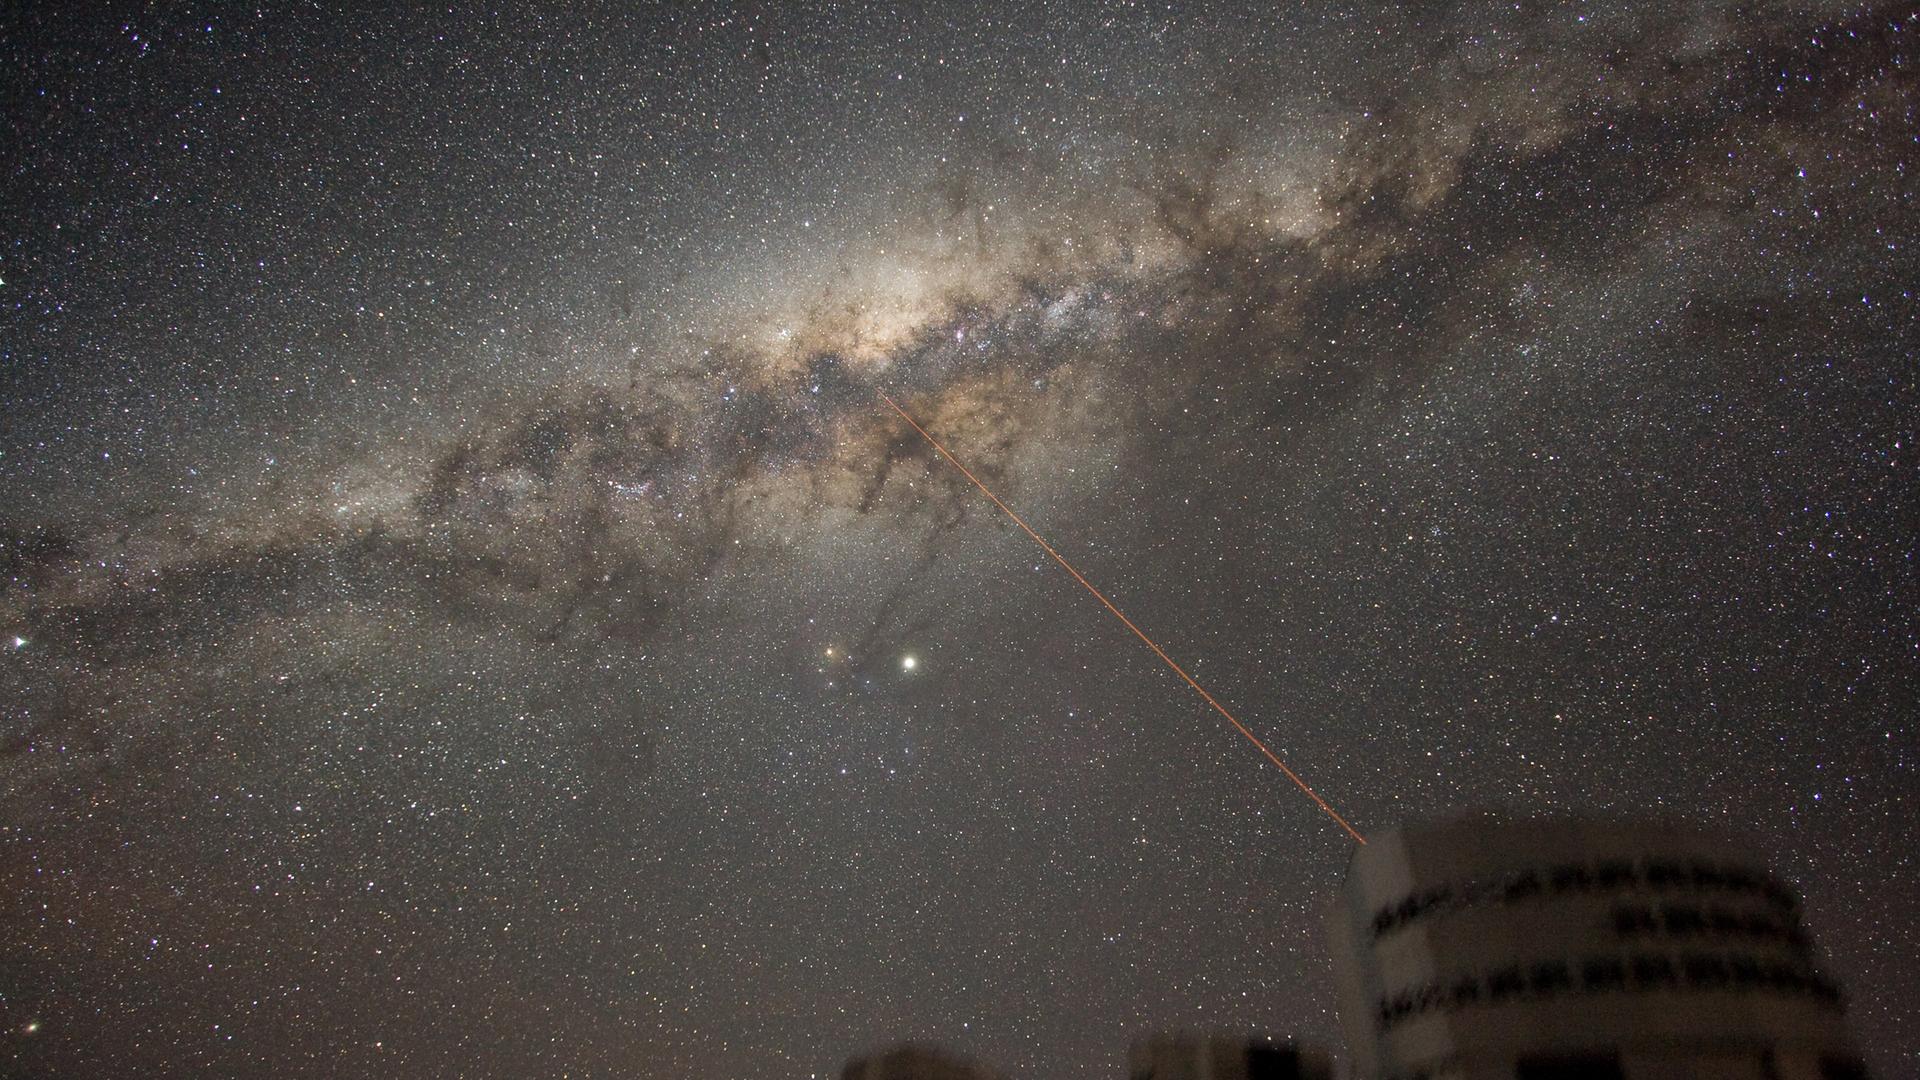 Bild des Nachthimmels über dem Paranal-Observatorium in Chile. Aufgenommen am 21. Juli 2007. Zu sehen ist ein breites Band aus Sternen und Staubwolken, das sich über mehr als 100 Grad am Himmel erstreckt. Dies ist die Milchstraße, die Galaxie, zu der wir gehören. In der Mitte des Bildes sind zwei helle Objekte zu sehen. Das hellste ist der Planet Jupiter.